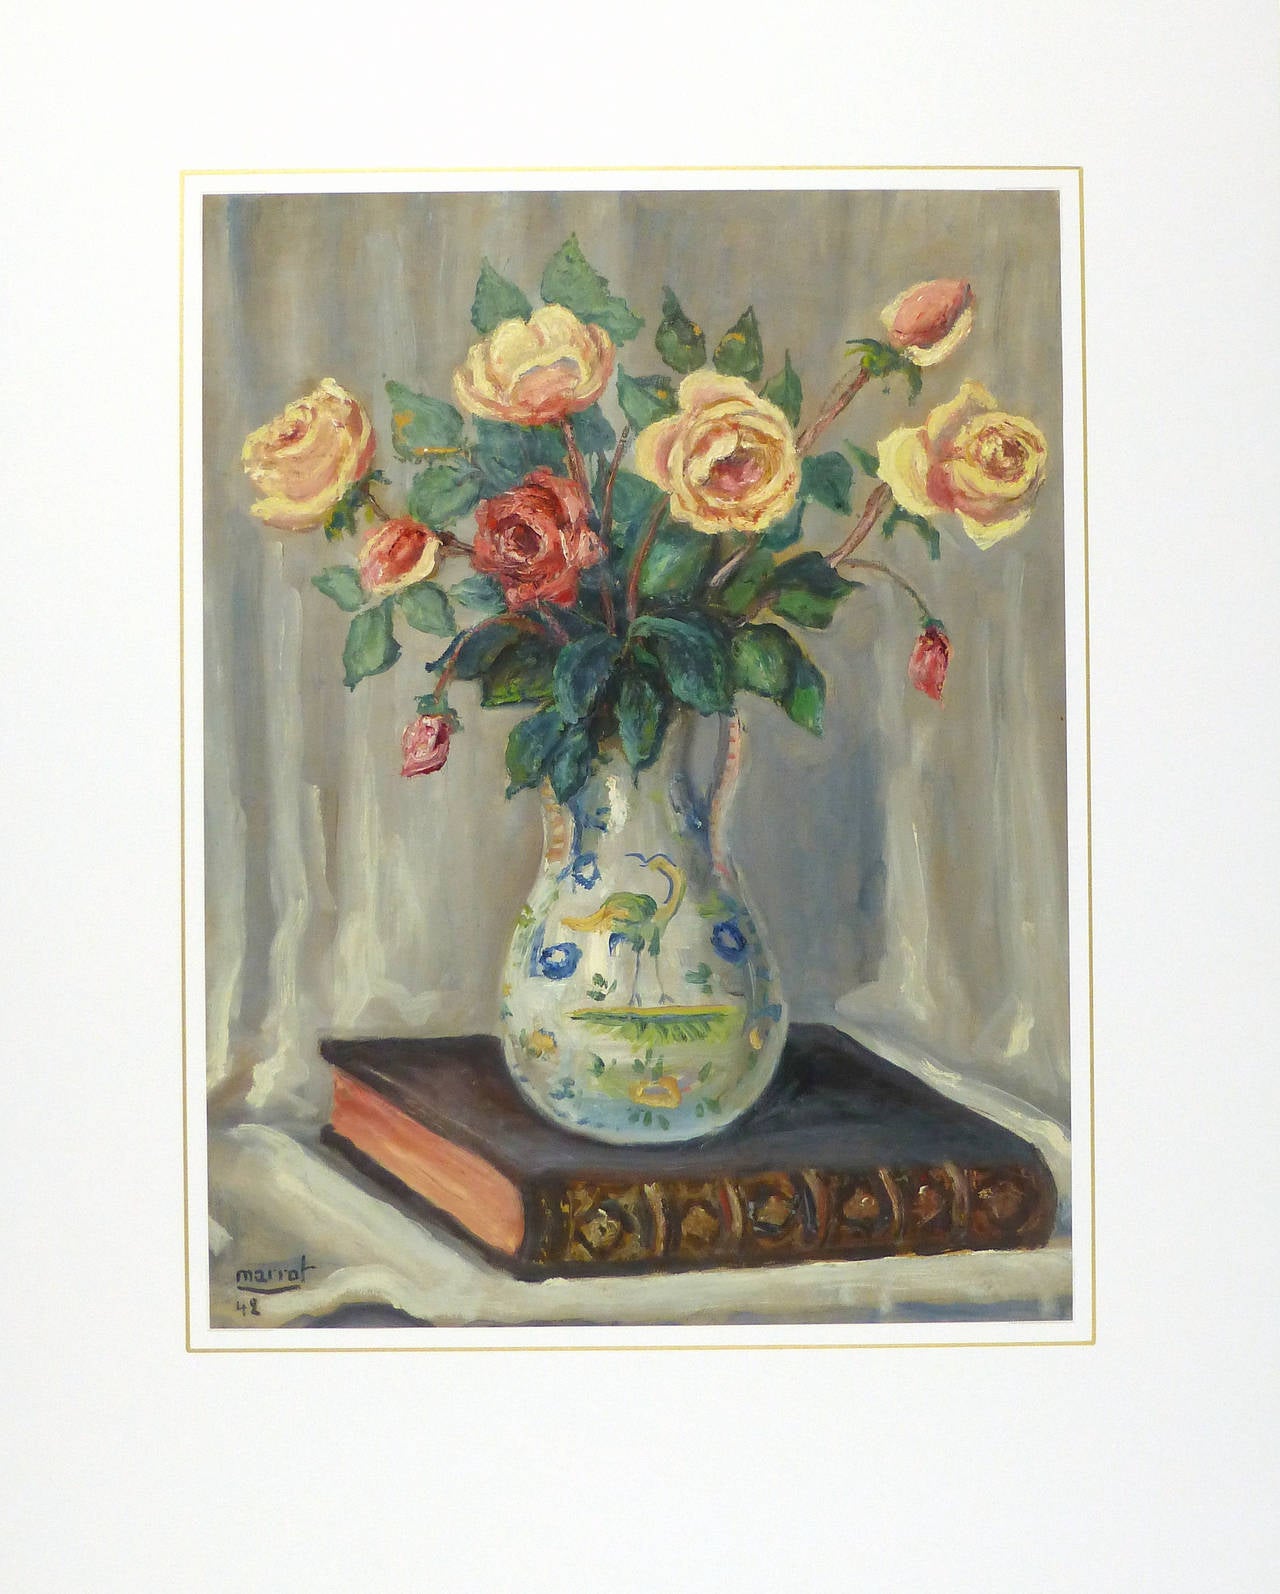 Spektakuläres Ölgemälde auf Papier eines eleganten Rosenstraußes in einem dekorativen Krug auf einem in Leder gebundenen Buch des französischen Künstlers Marrot, 1942. Signiert und datiert unten links. 

Original Vintage-Kunstwerk auf Papier auf